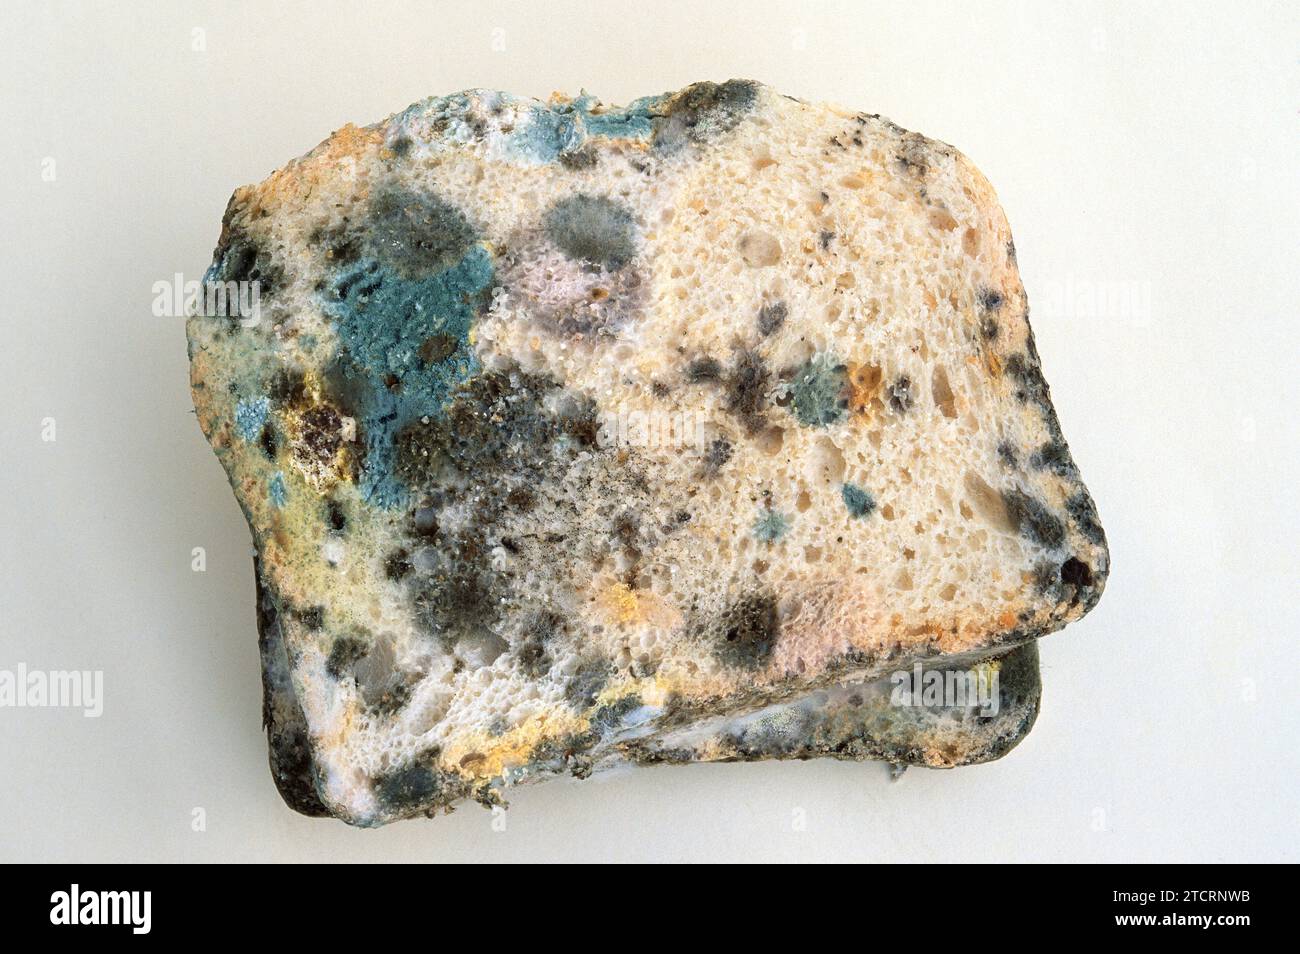 https://c8.alamy.com/comp/2TCRNWB/black-bread-mold-rhizopus-stolonifer-or-rhizopus-nigricans-colonizing-bread-2TCRNWB.jpg